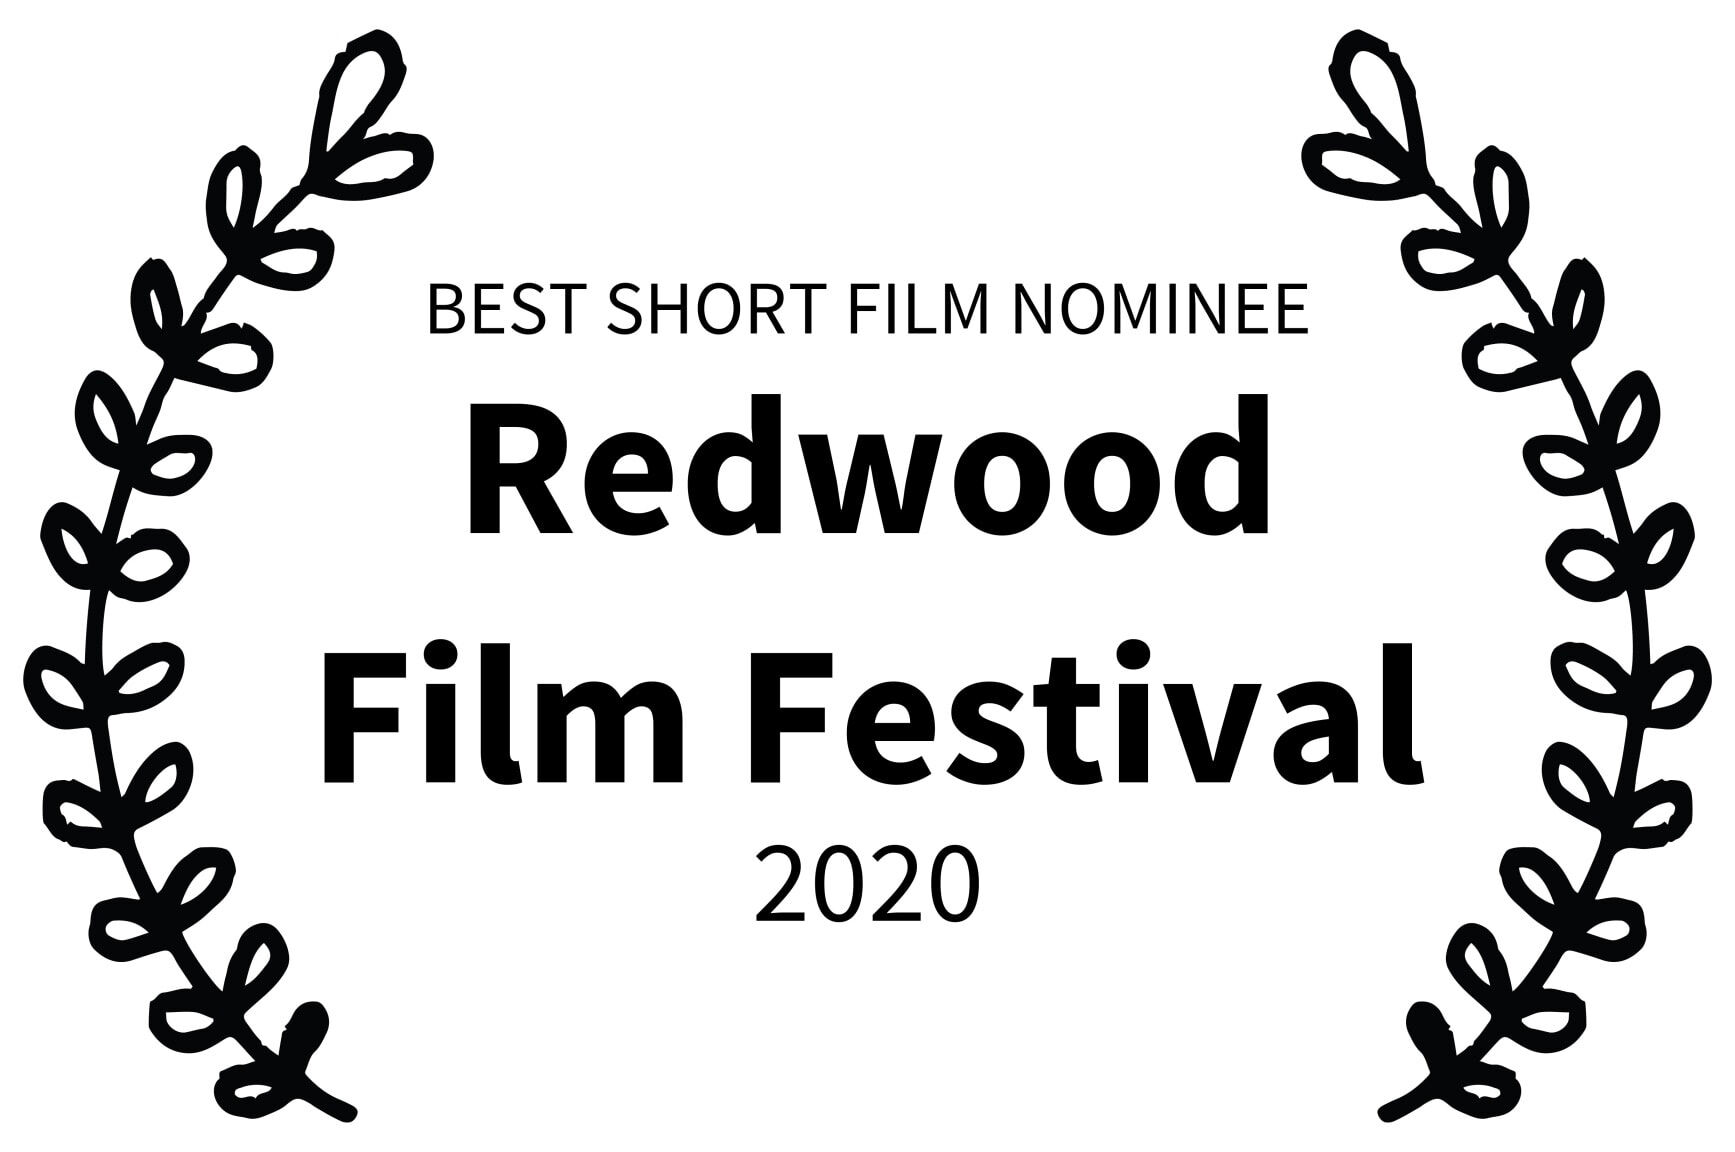 BEST SHORT FILM NOMINEE - Redwood Film Festival - 2020